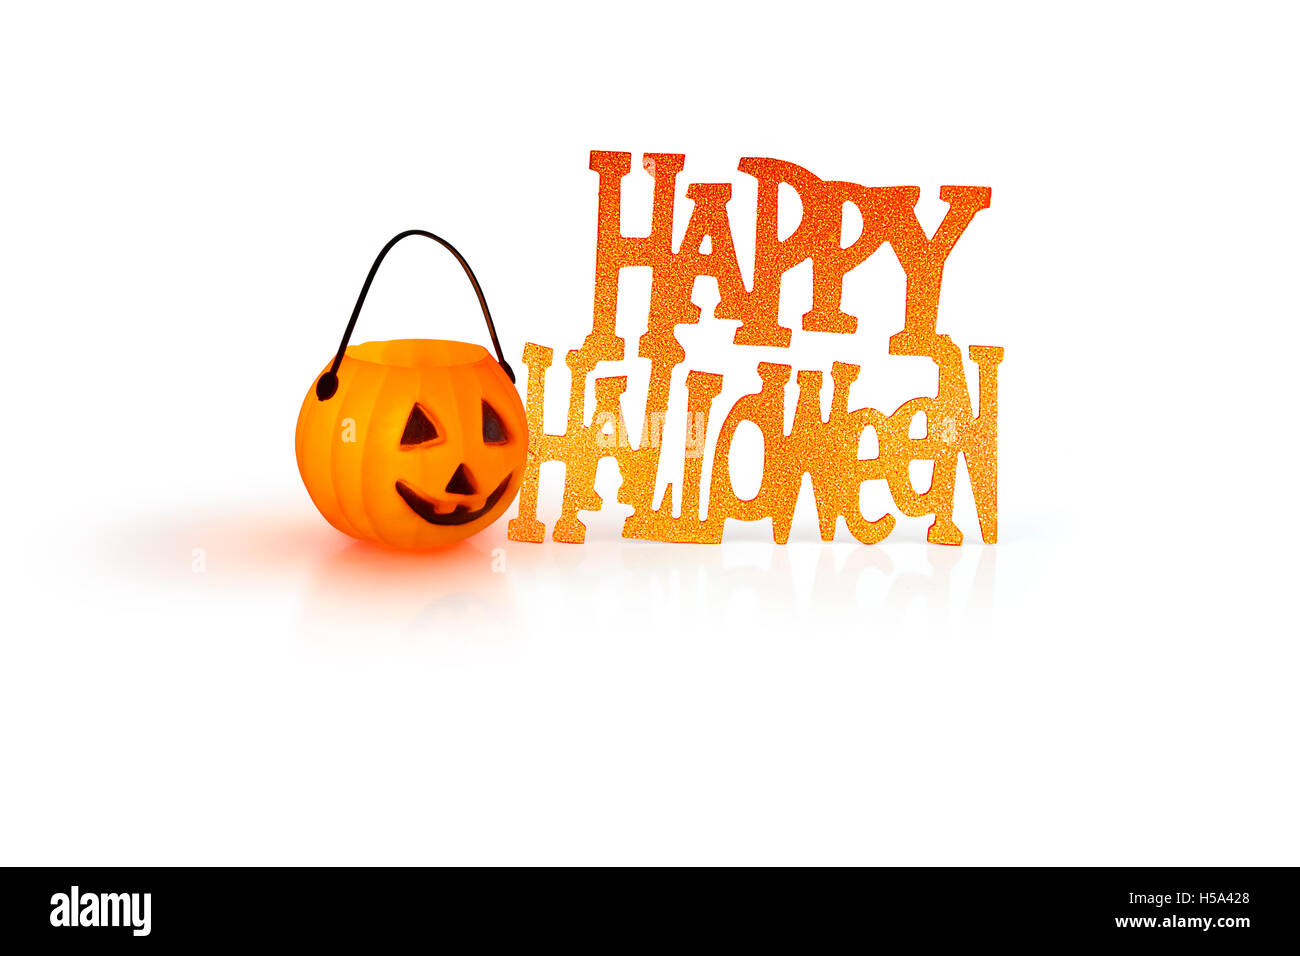 Halloween-Konzept mit einer orange glühenden Kürbis Form Teelicht Kerze-Halter und ein Happy Halloween Zeichen auf weißem Hintergrund Stockfoto